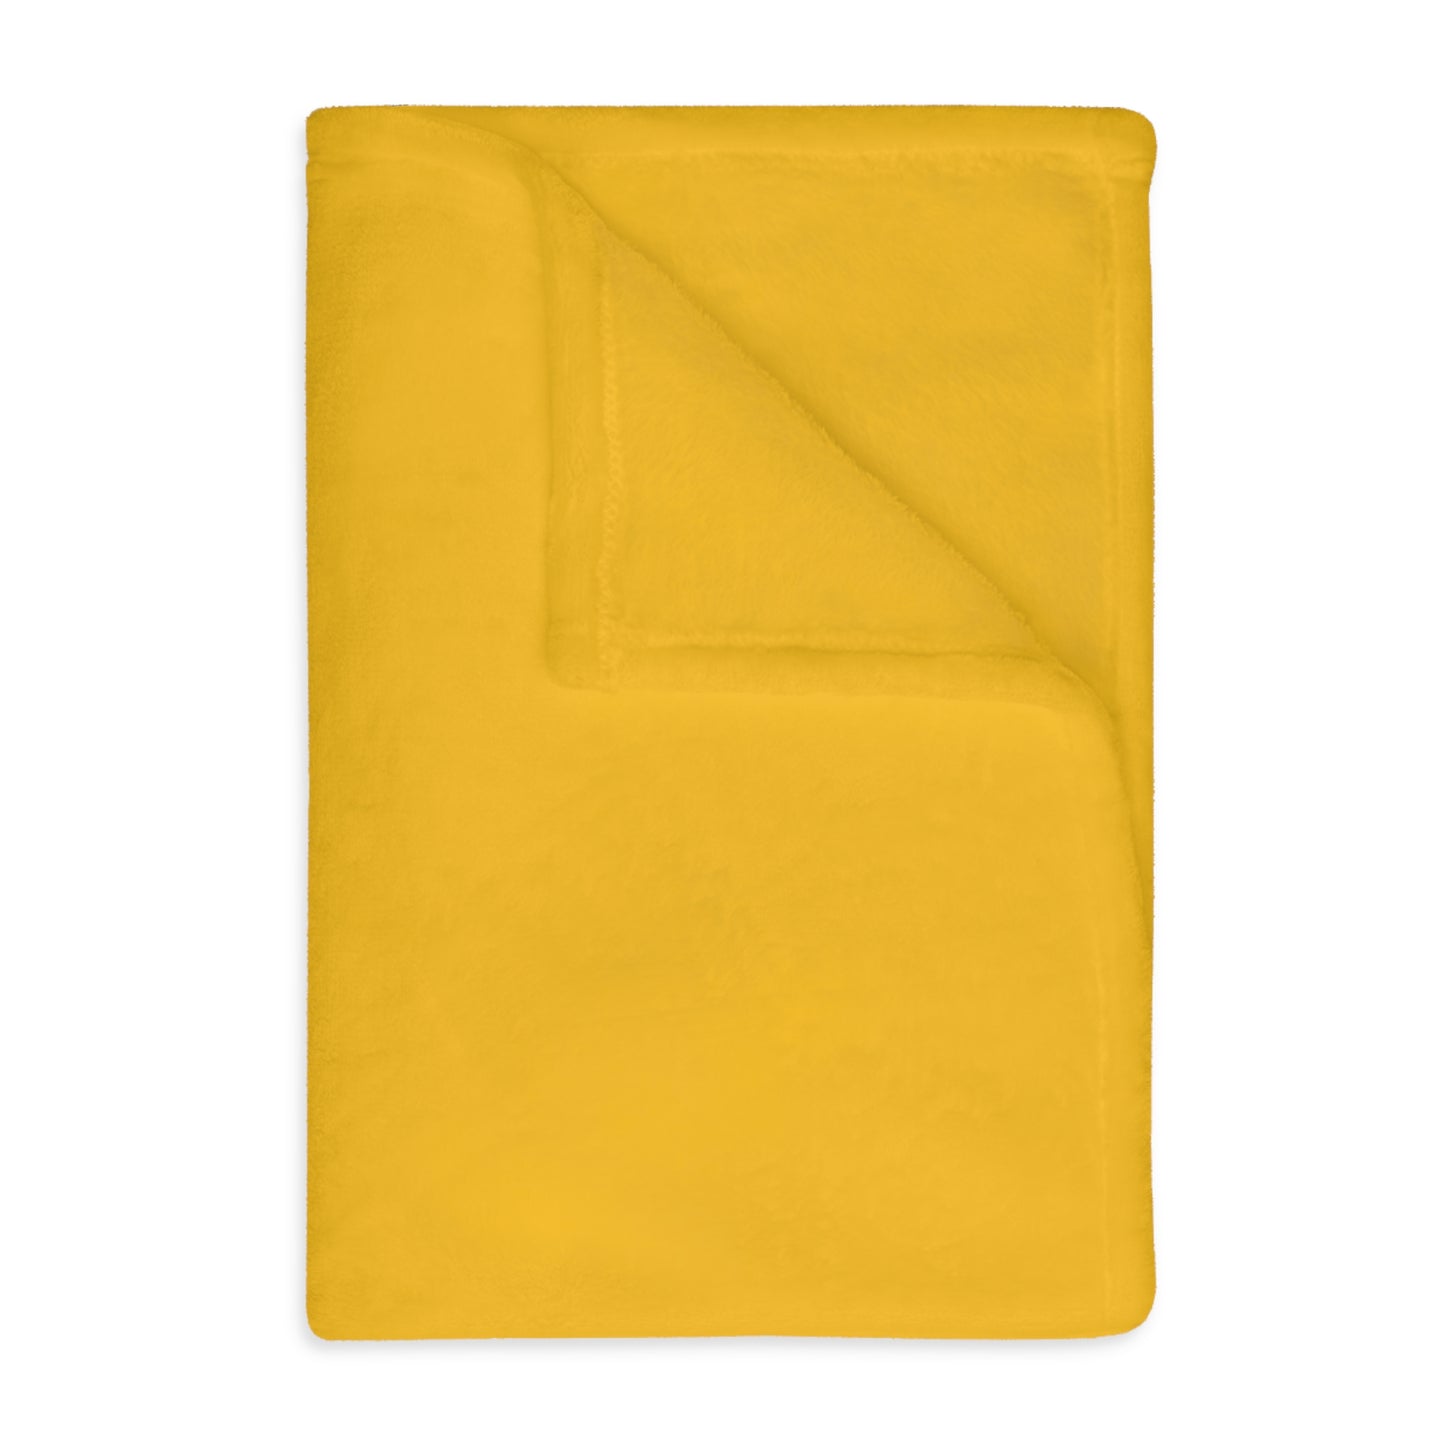 Velveteen Minky Blanket (Two-sided print): Dance Yellow